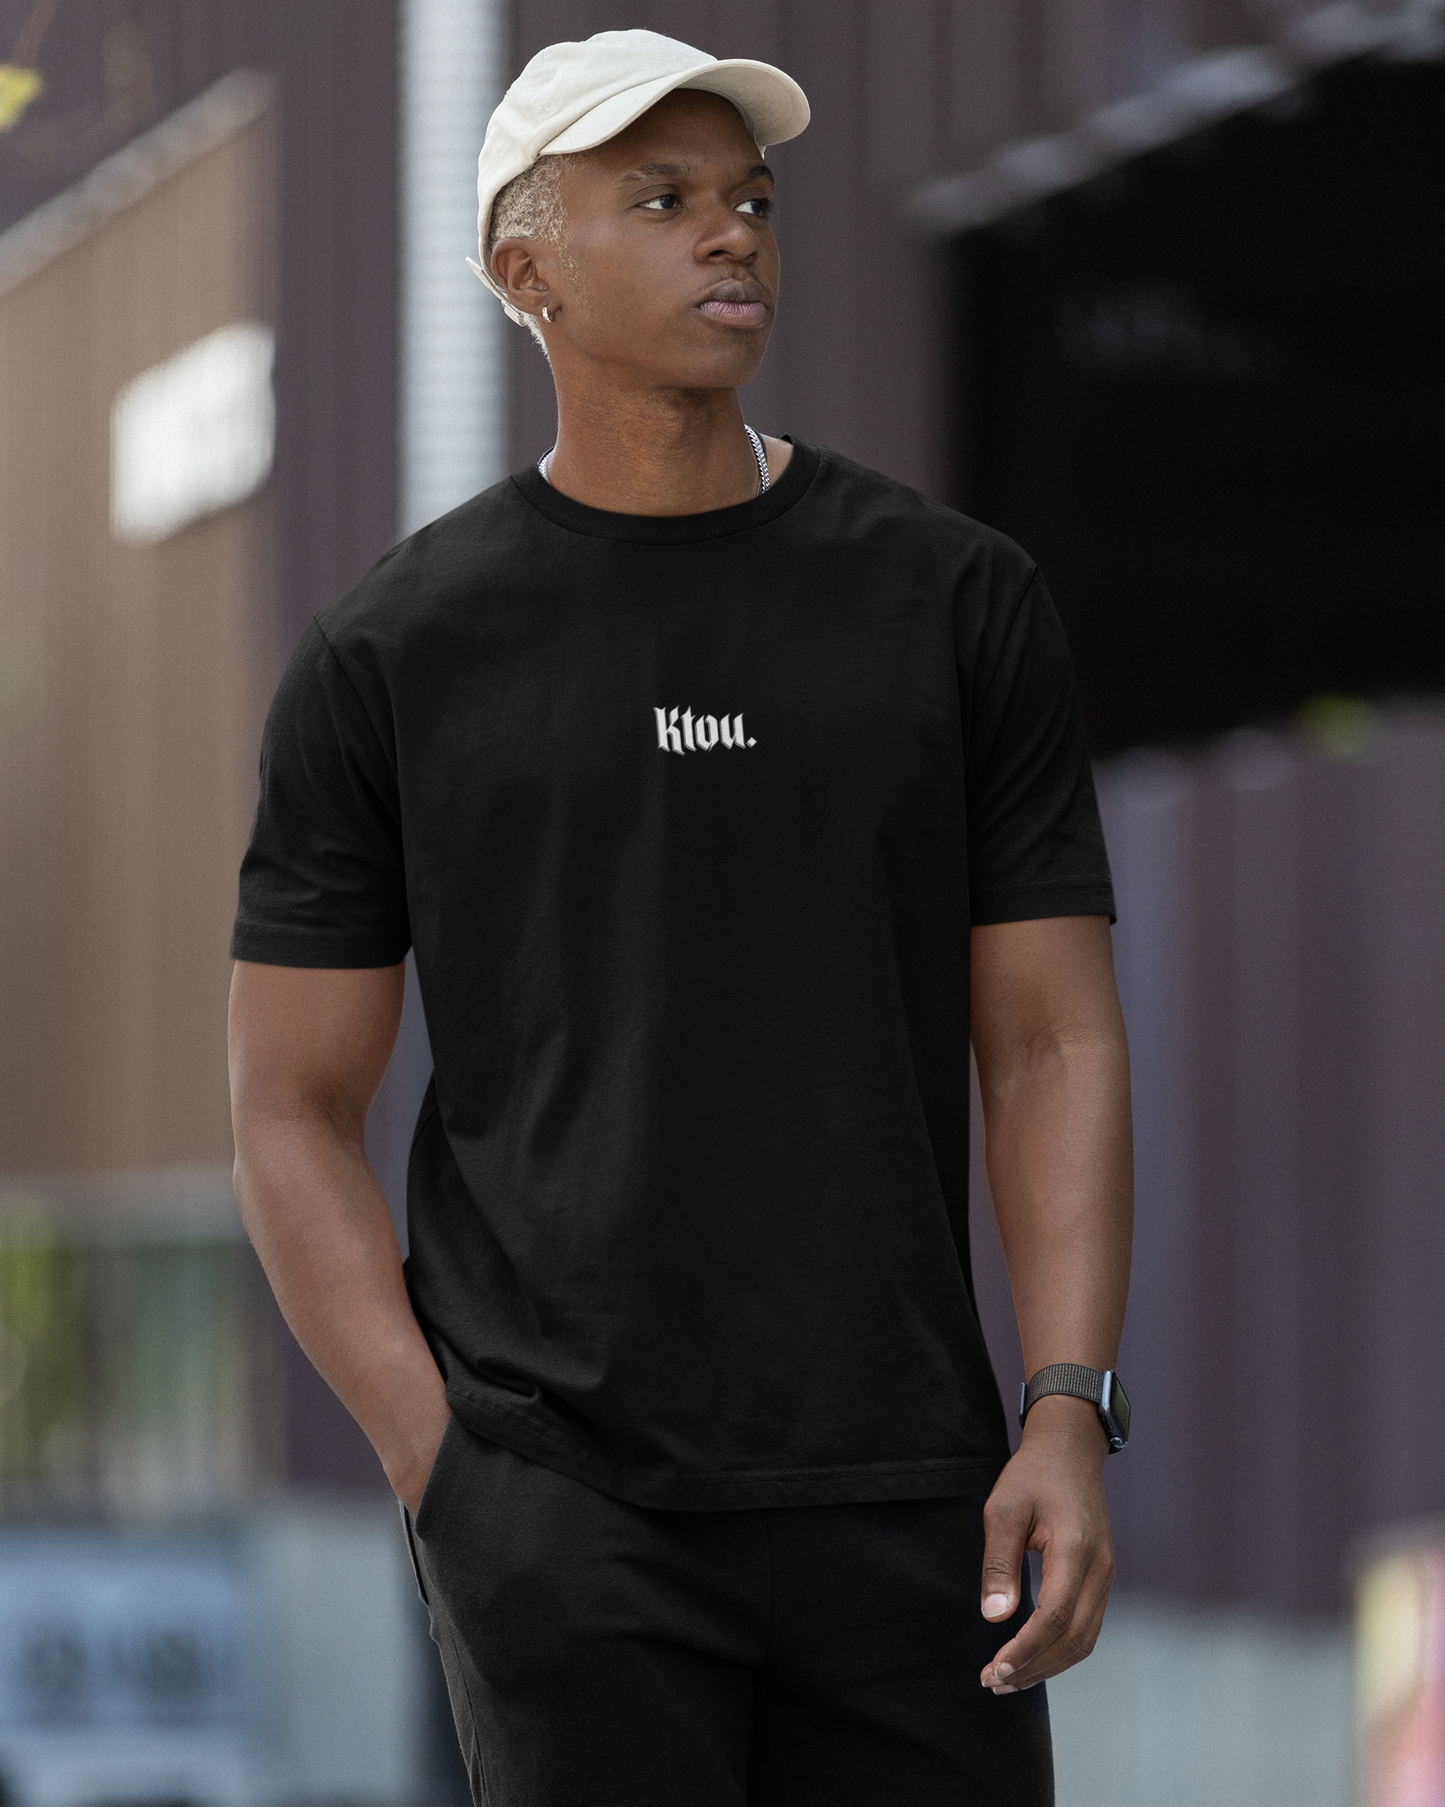 KTOU T-Shirt Black